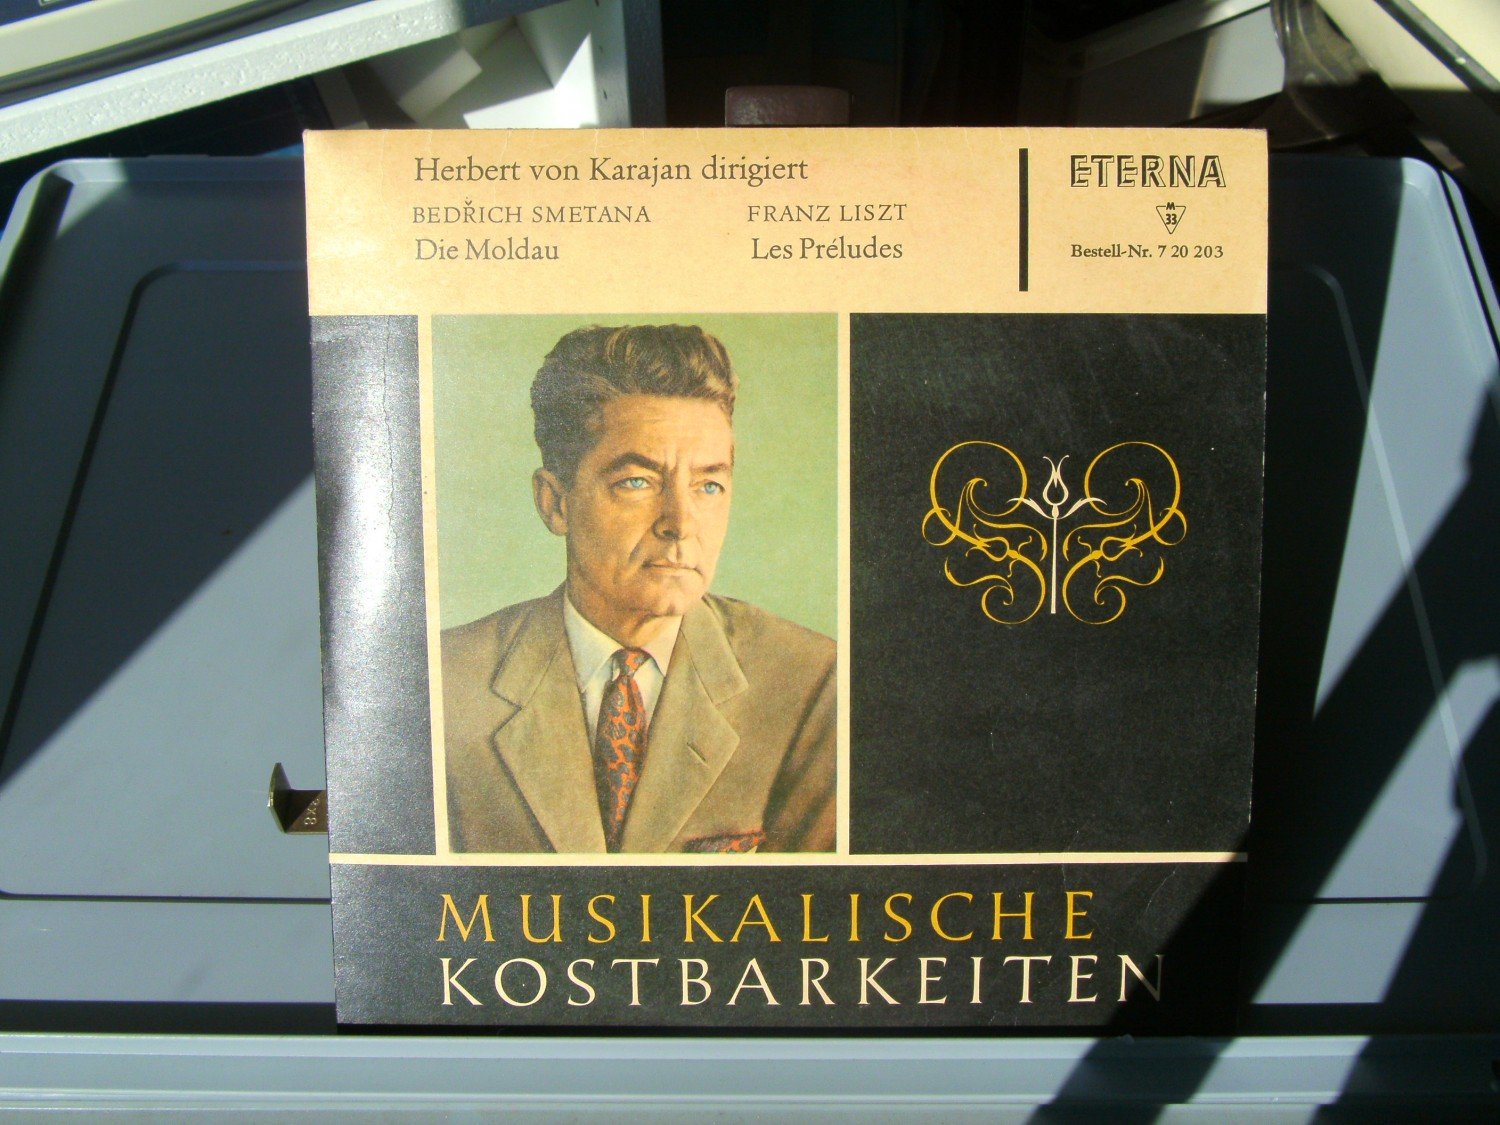 MUSIKALISCHE KOSTBARKEITEN“ (Herbert gebraucht – Karajan) kaufen von – A02fmSCJ21ZZ7 Tonträger